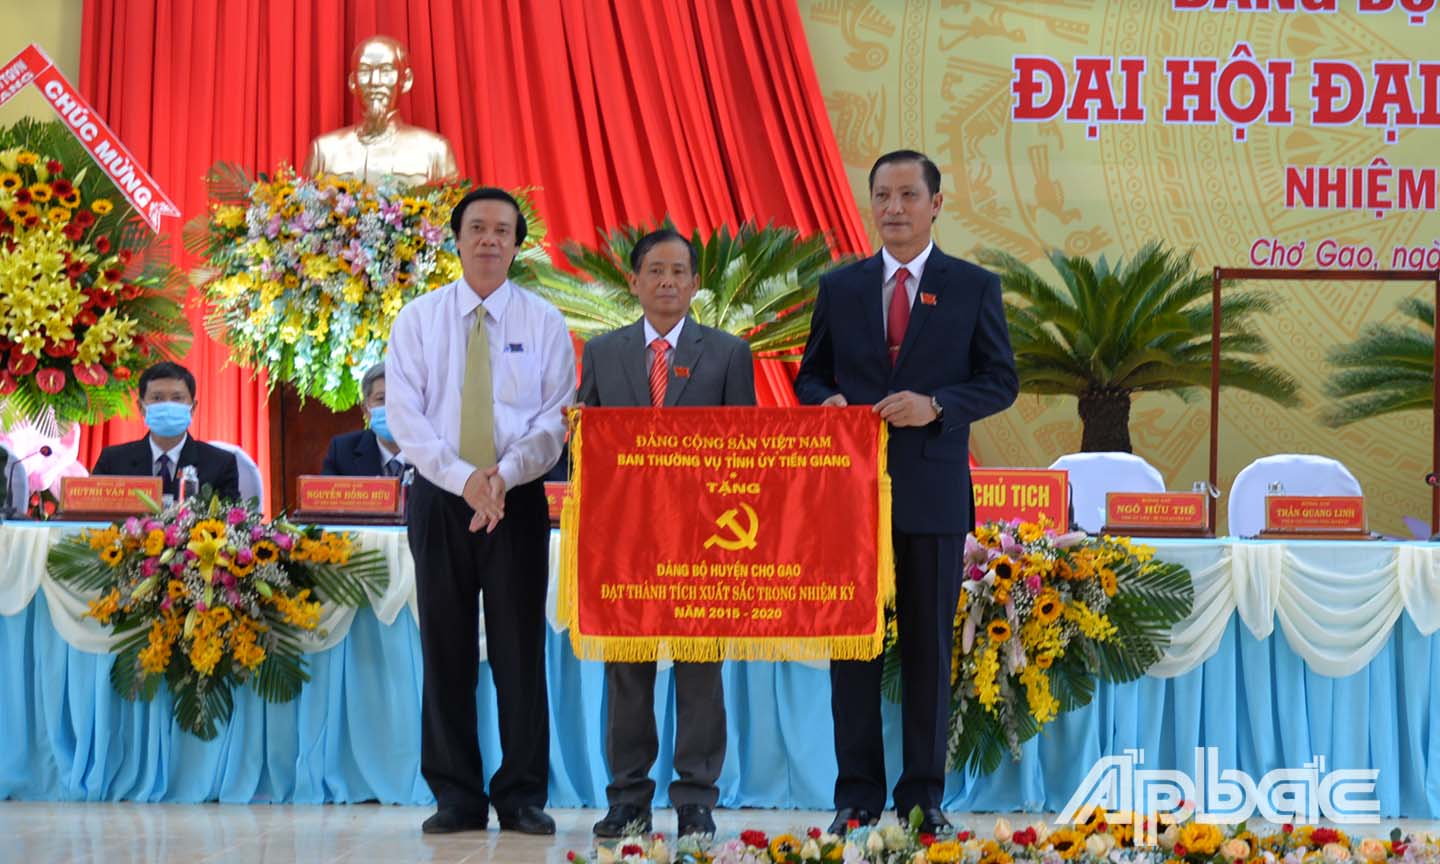 Đồng chí Nguyễn Văn Danh trao cờ thi đua đạt thành tích xuất sắc nhiệm kỳ 2015 - 2020 của Ban Thường vụ Tỉnh ủy cho Đảng bộ huyện Chợ Gạo.